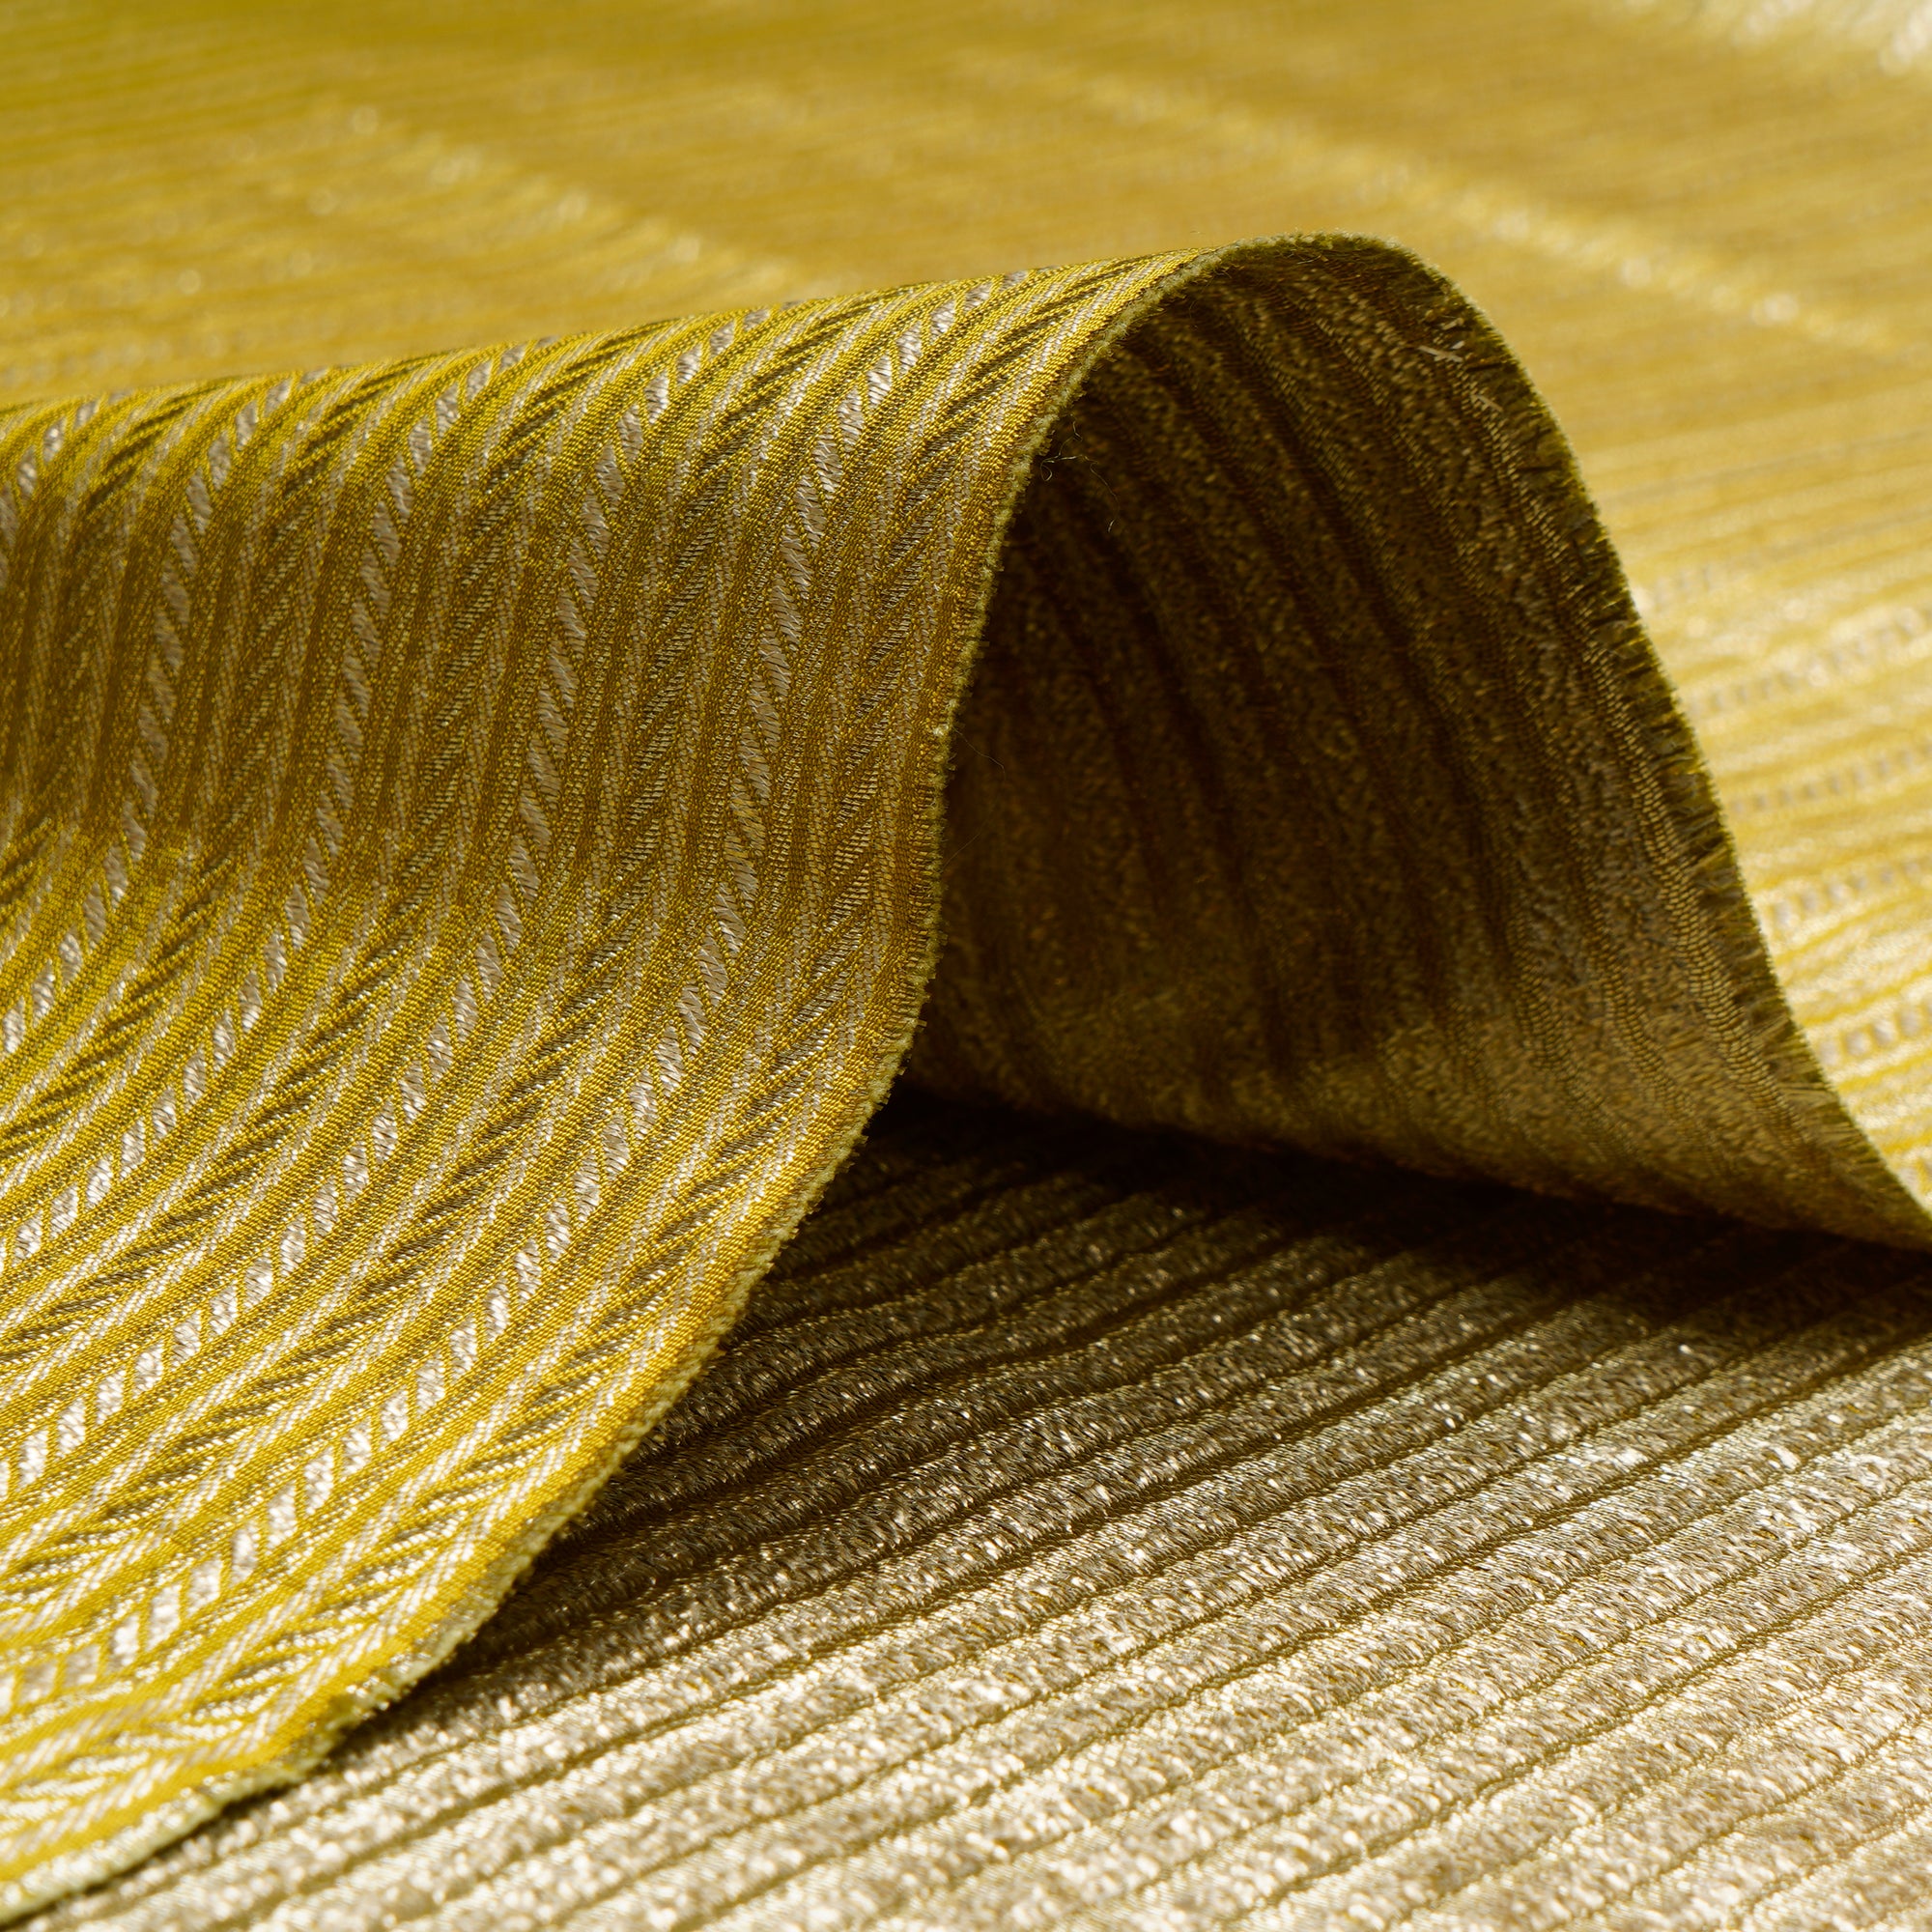 Snake Eye Stripe Pattern Blended Banarasi Brocade Fabric